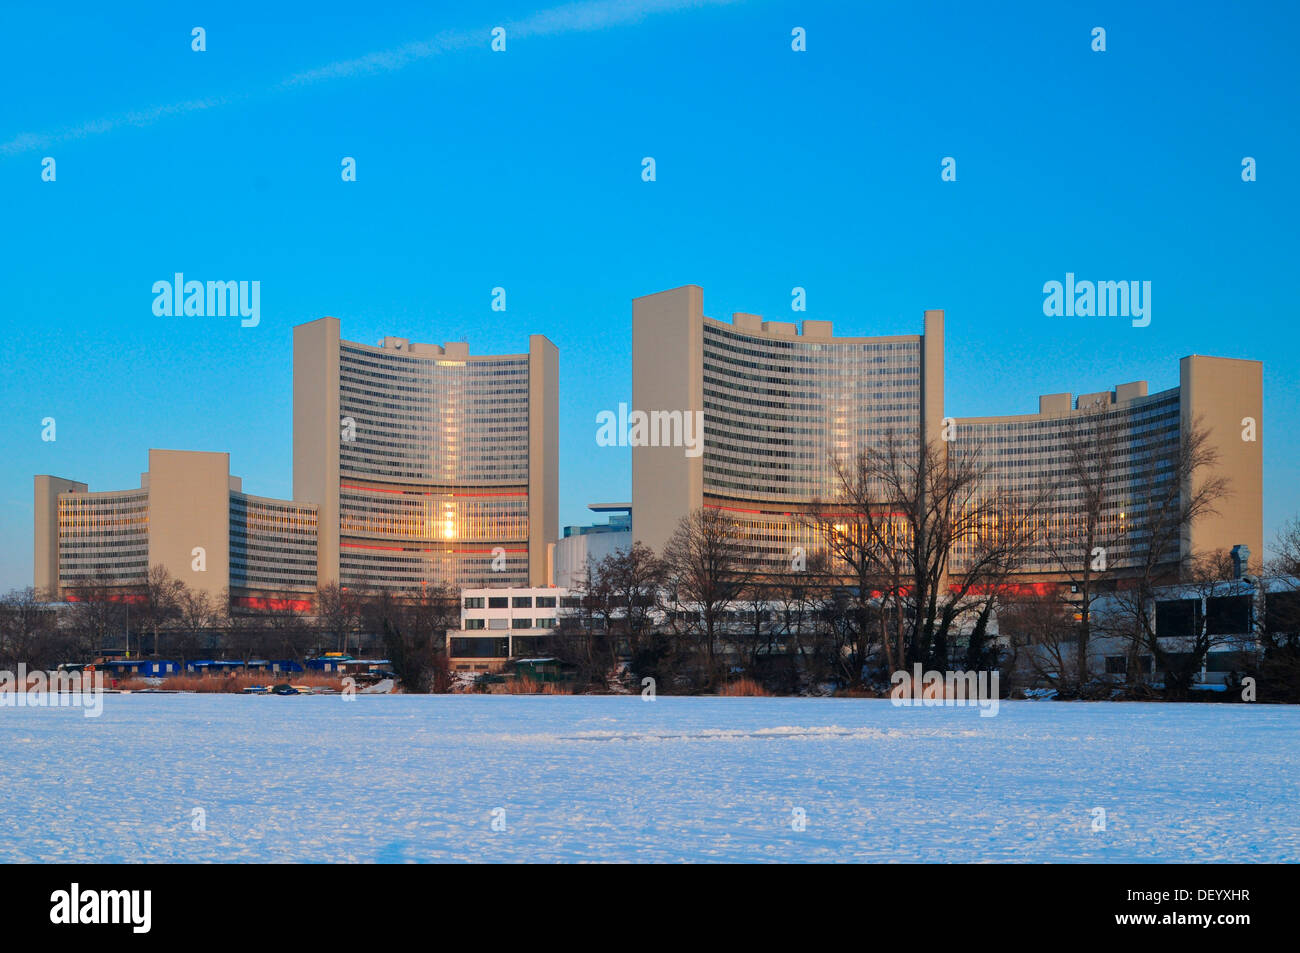 Le Centre international de Vienne, siège de l'ONU, sur un lac gelé, Vienne, Vienne, Autriche l'État Banque D'Images